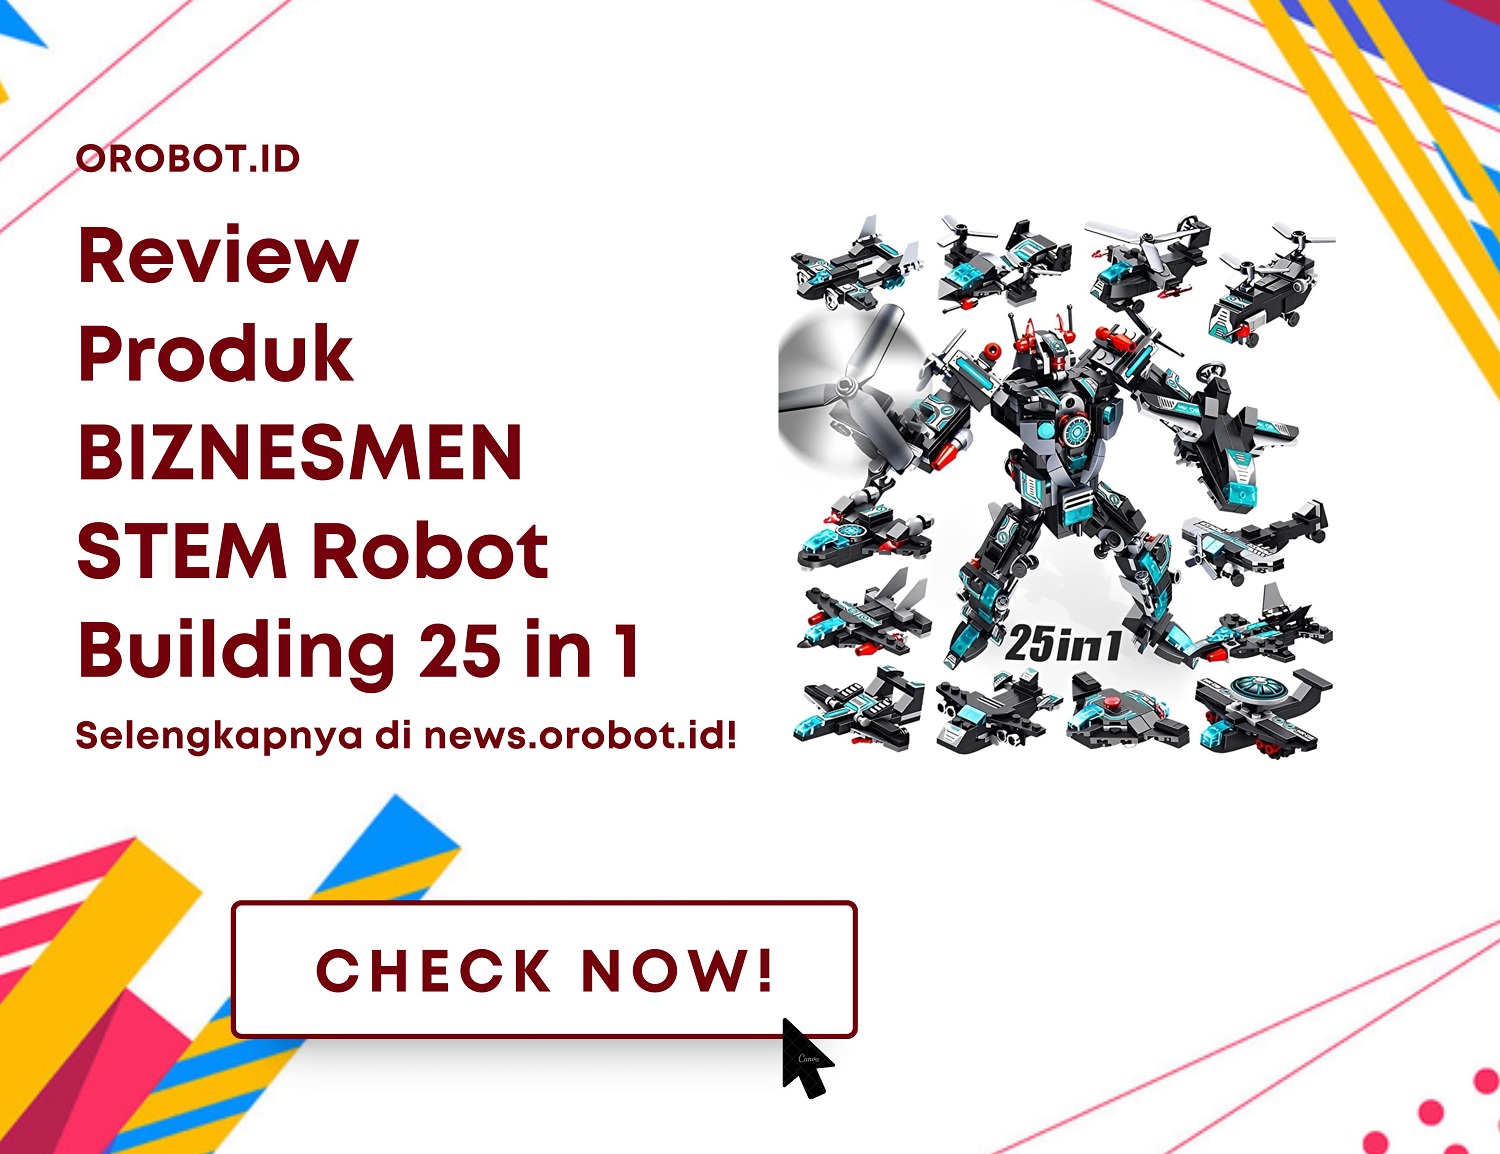 Review BIZNESMEN STEM Robot Building 25 in 1 - Membangun Kreativitas dan Keterampilan Anak